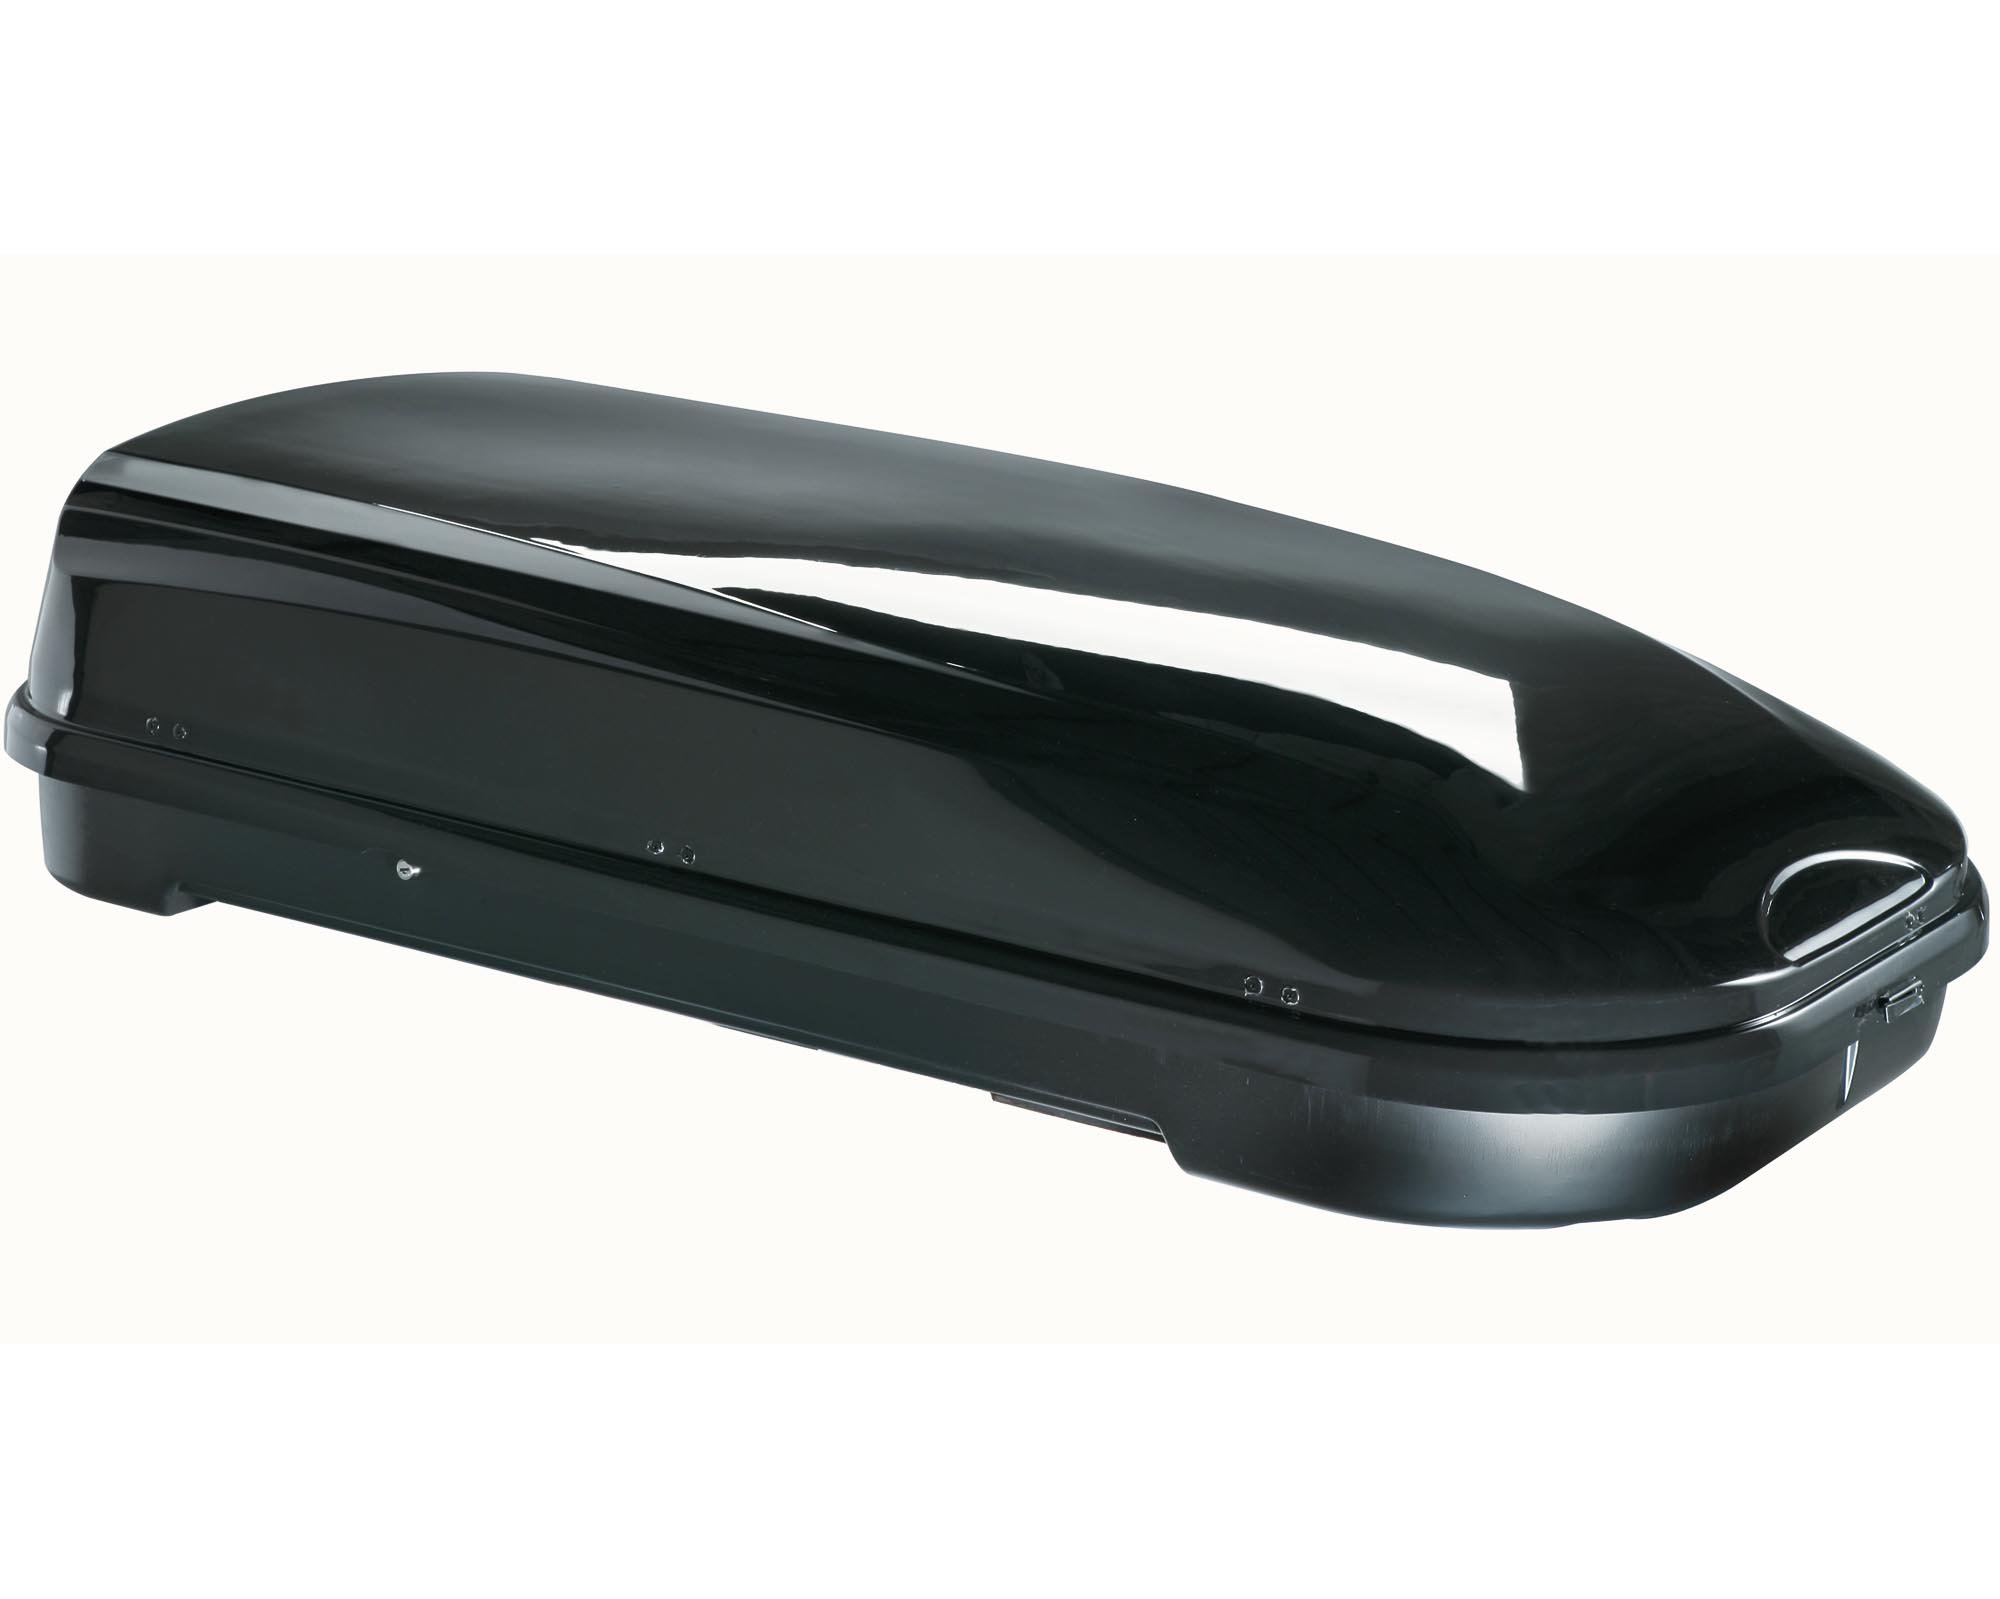 Skibox schwarz VDP JUFL580 580 Liter abschließbar + Relingträger Quick aufliegende Reling im Set kompatibel mit Porsche Macan ab 2015